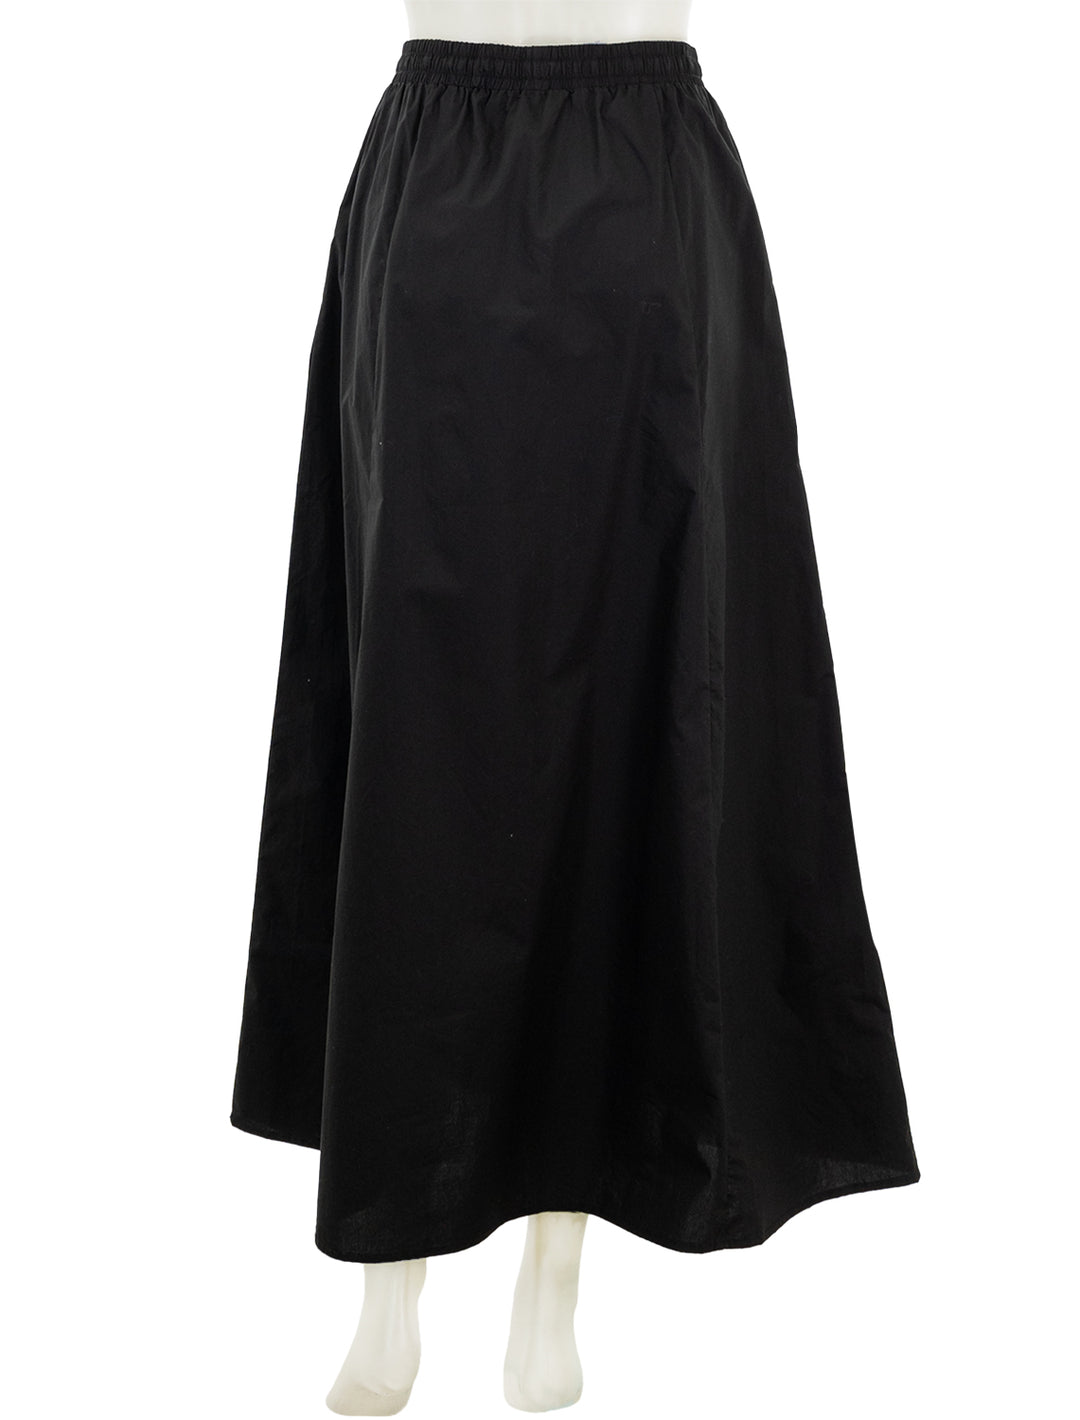 Back view of Steve Madden's sunny skirt in black.